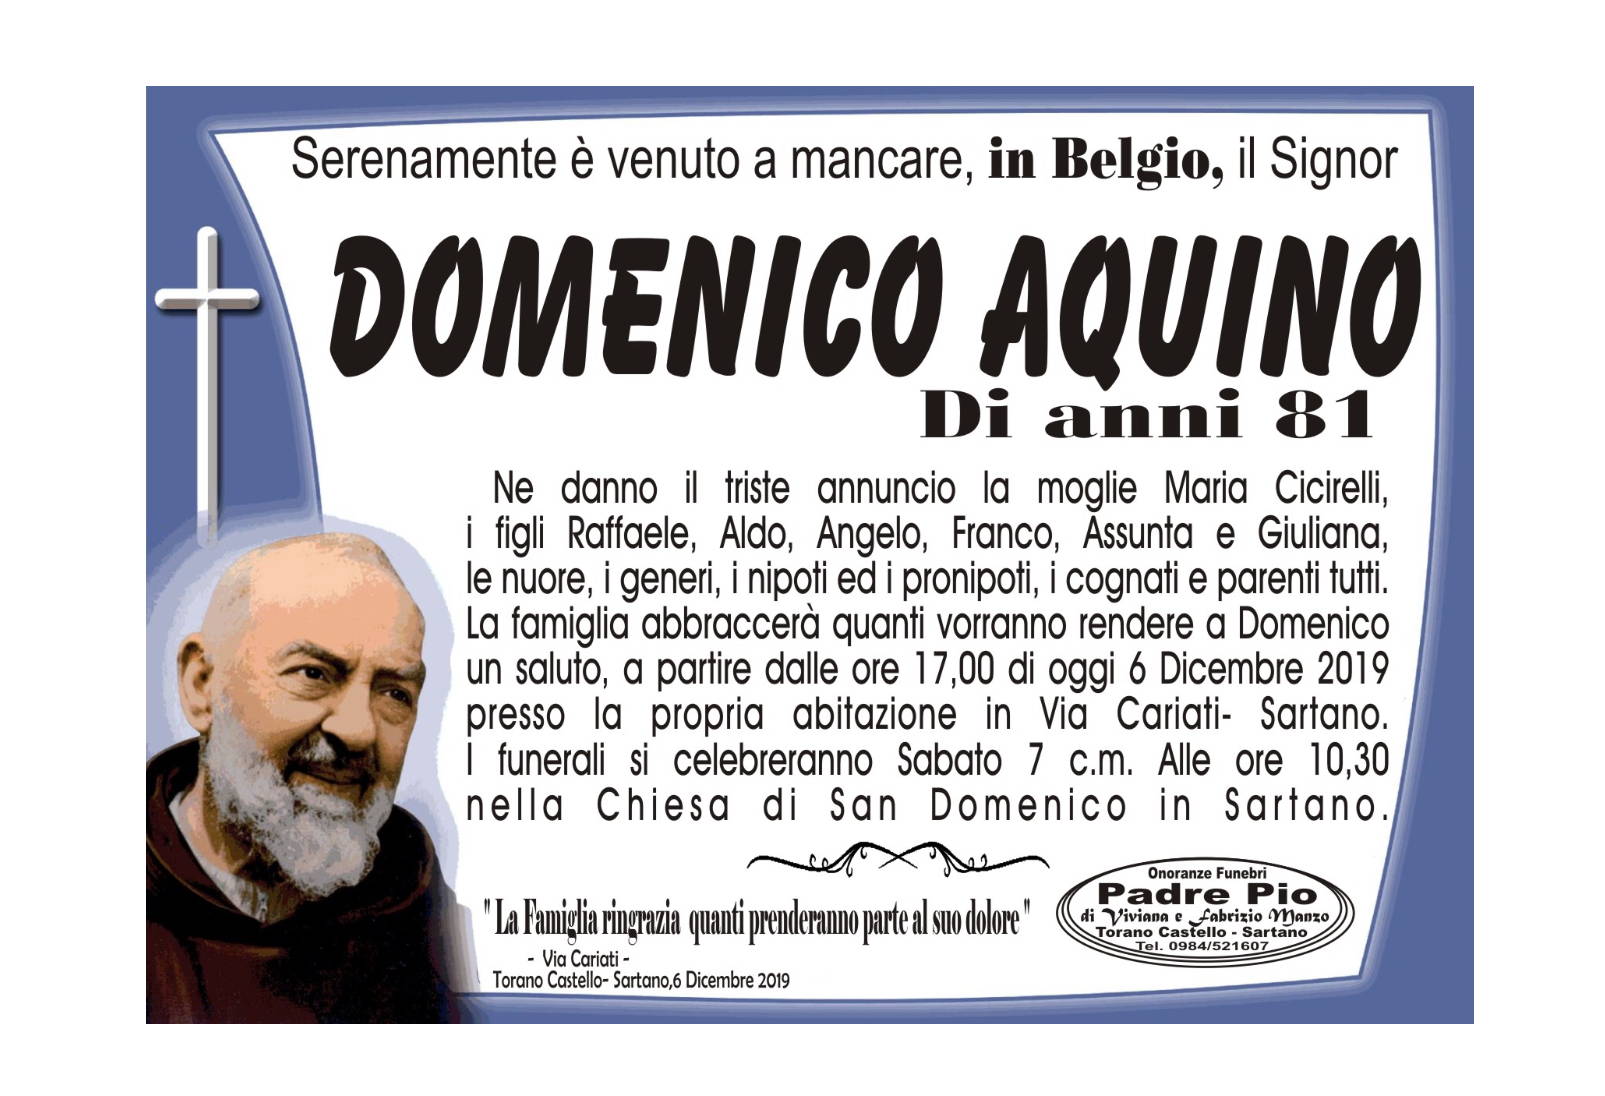 Domenico Aquino